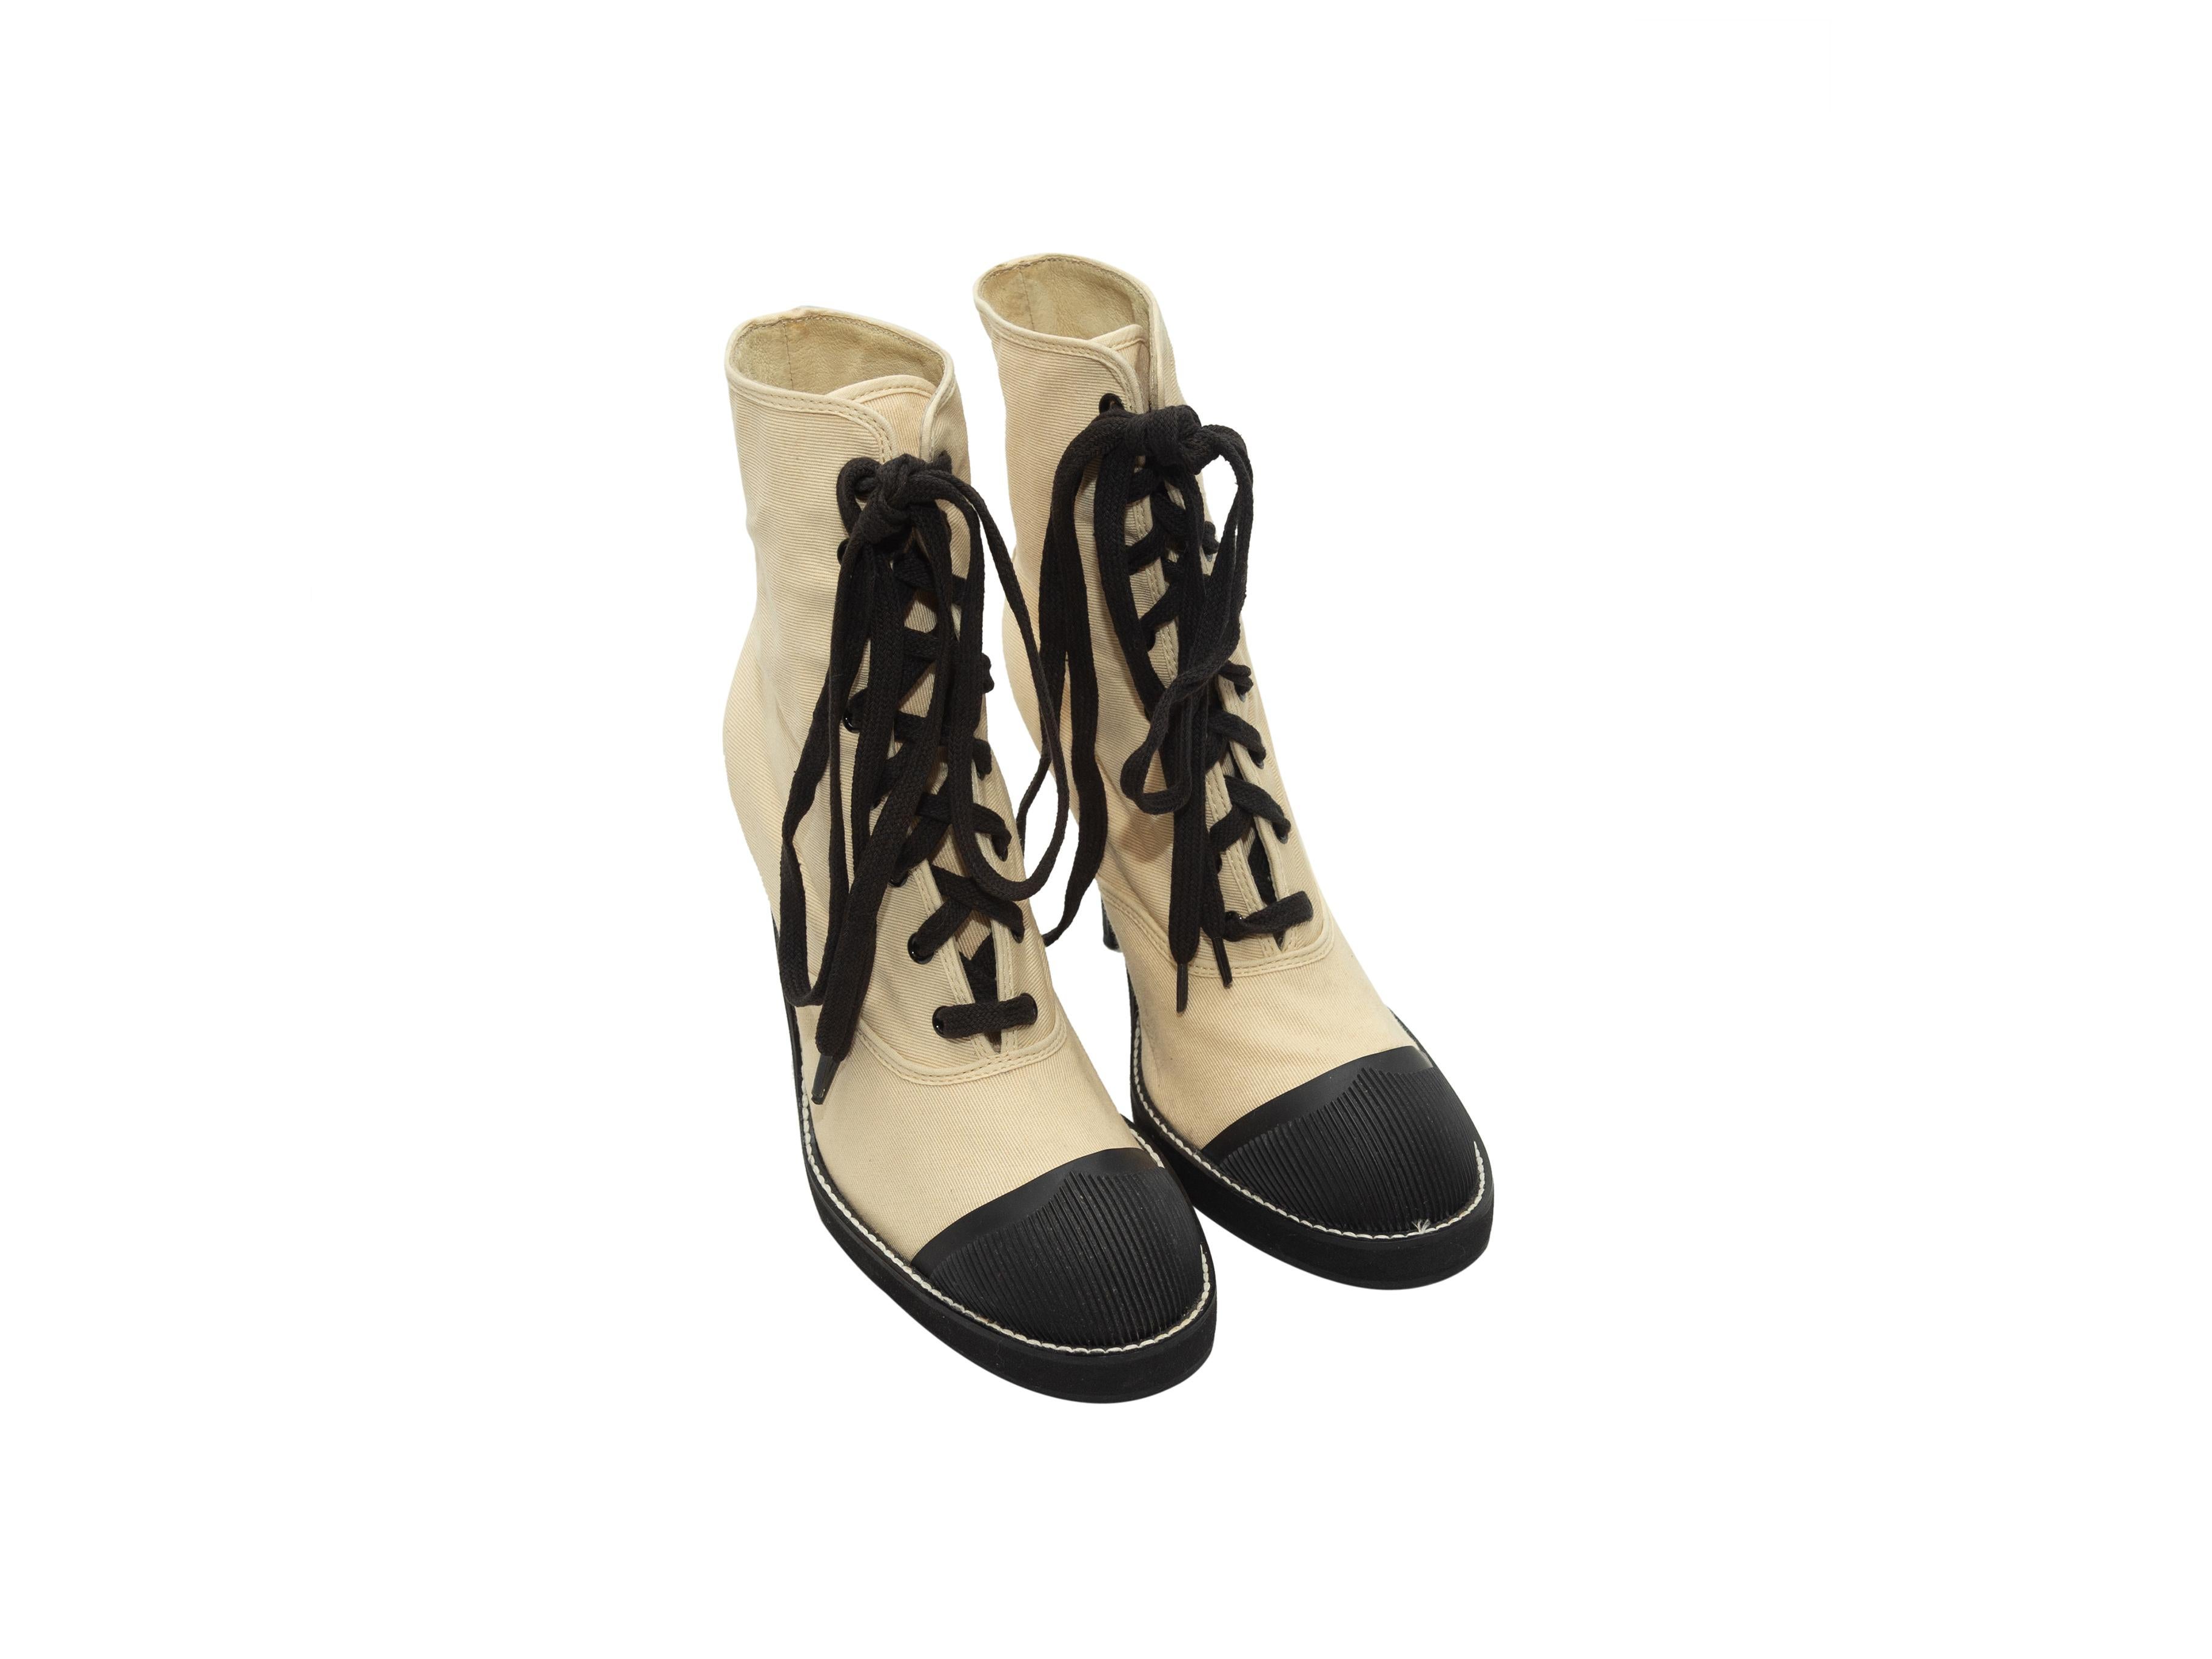 Details zum Produkt: Vintage-Stiefel aus cremefarbenem Canvas und schwarzer Gummikappe von Junior Gaultier. Gestufte Absätze. Schnürverschlüsse an den Oberteilen. Designer Größe 37. 4